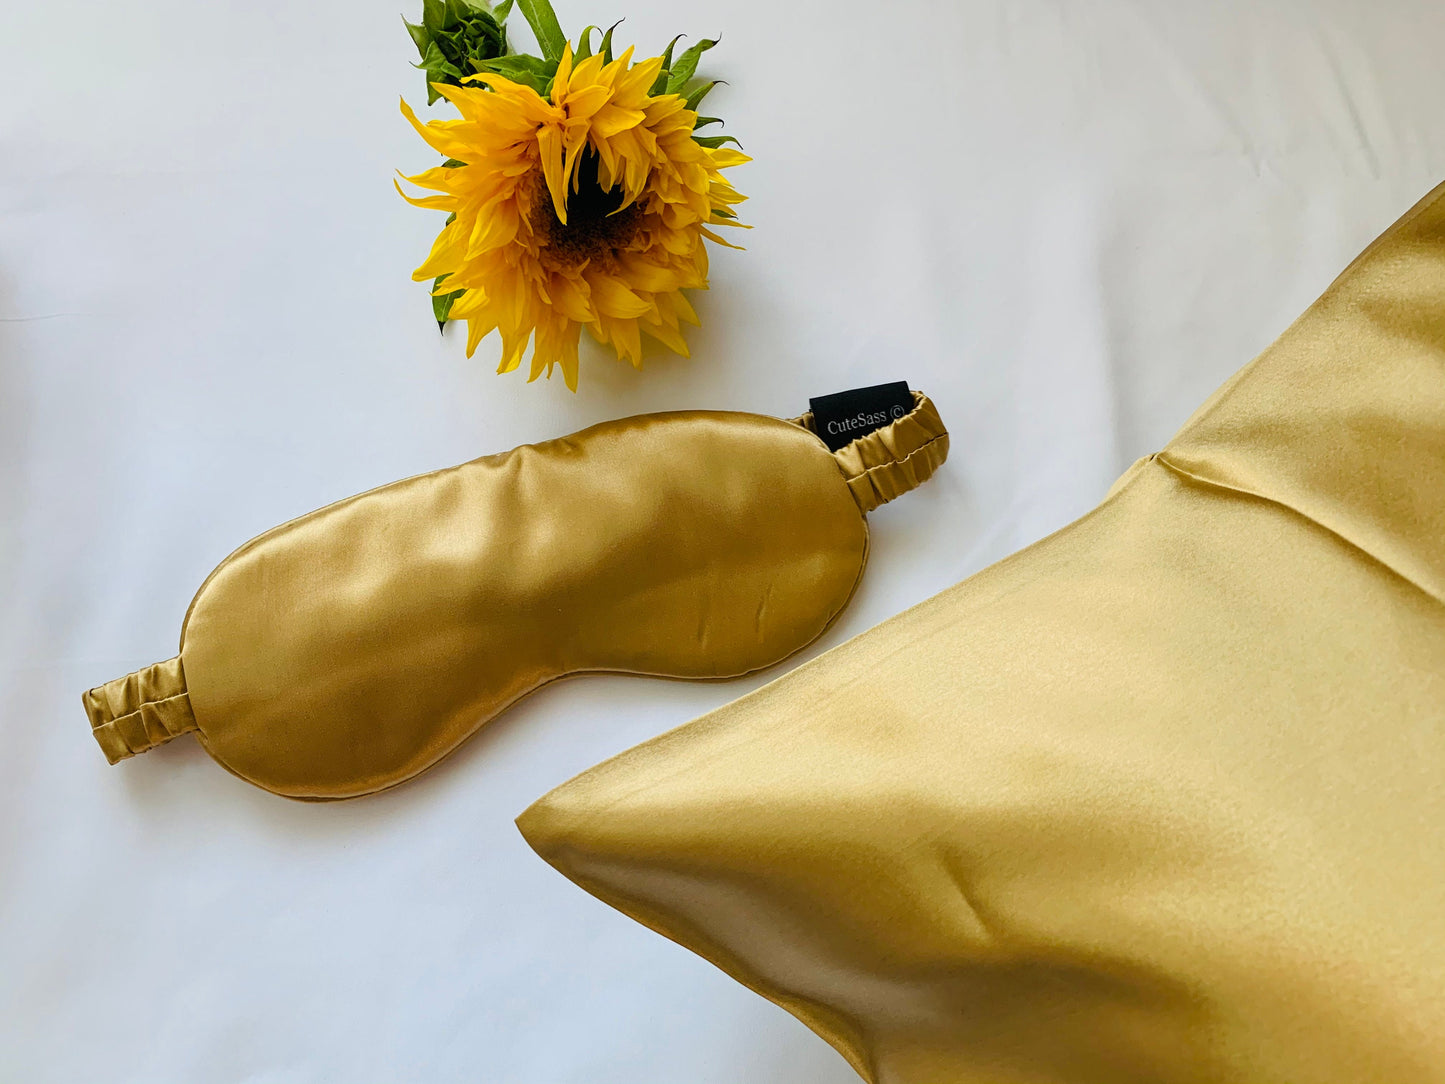 100% Mulberry 22 Momme Silk Pillowcase, Long Fibre, Organic Queen Silk Pillowcase with Hidden Zipper, Matching Eye Sleeping Mask 22 Momme